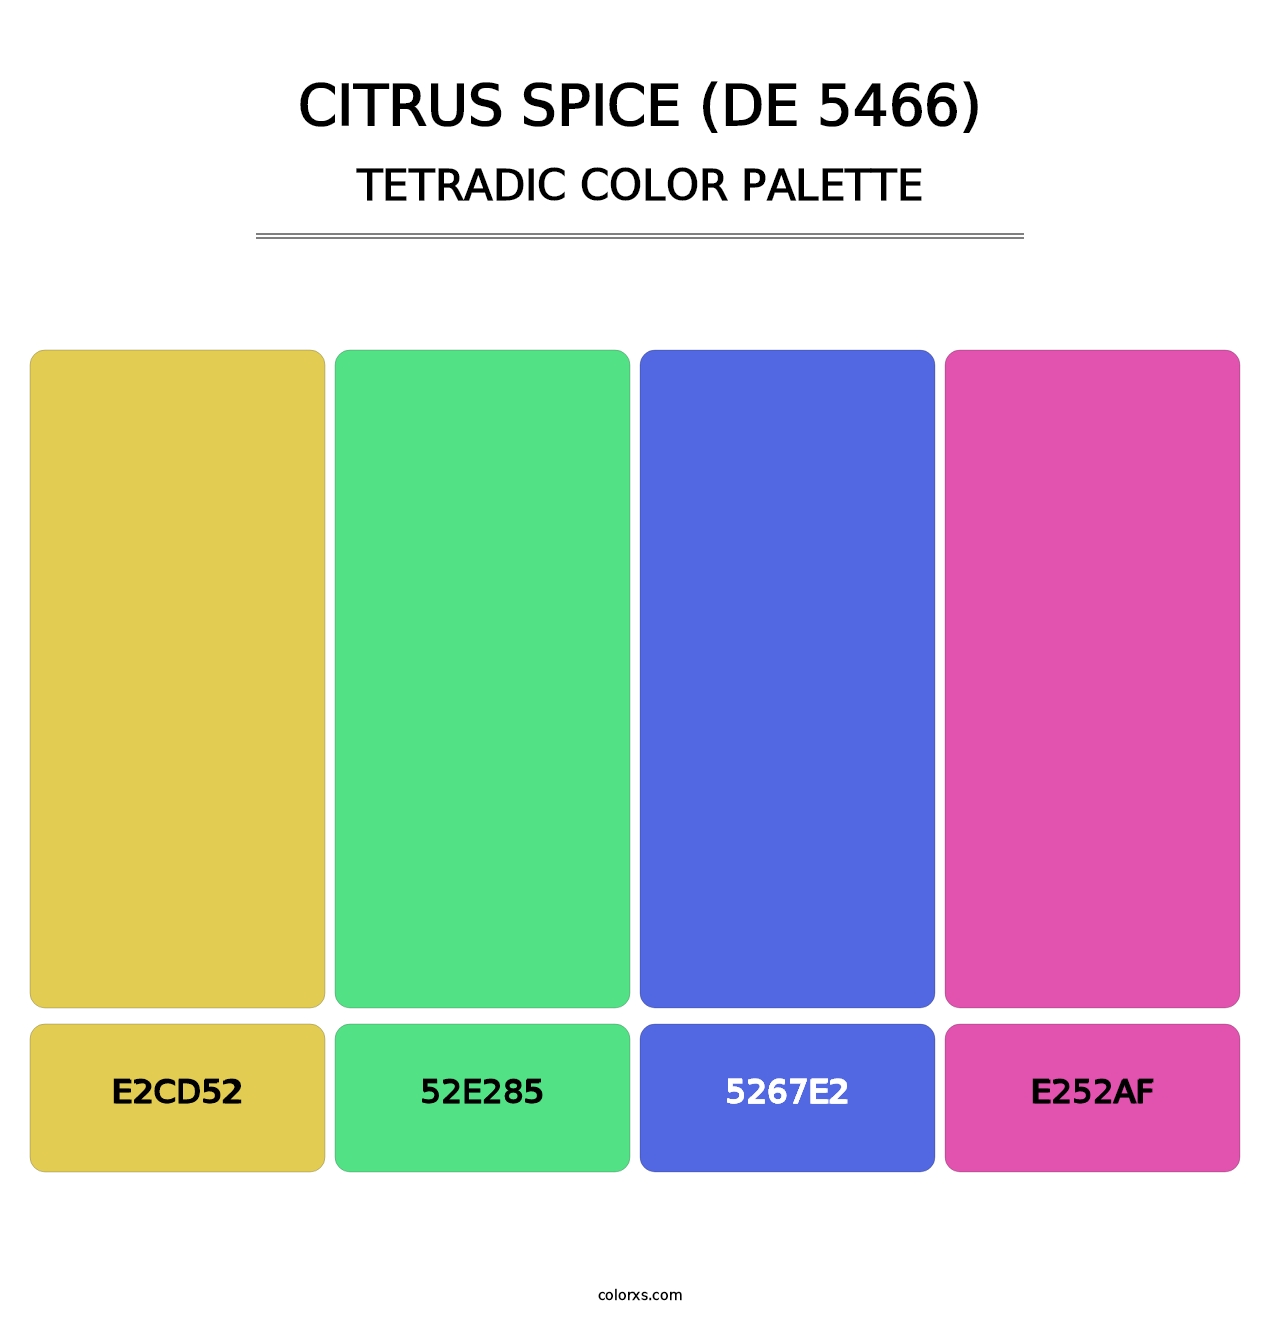 Citrus Spice (DE 5466) - Tetradic Color Palette